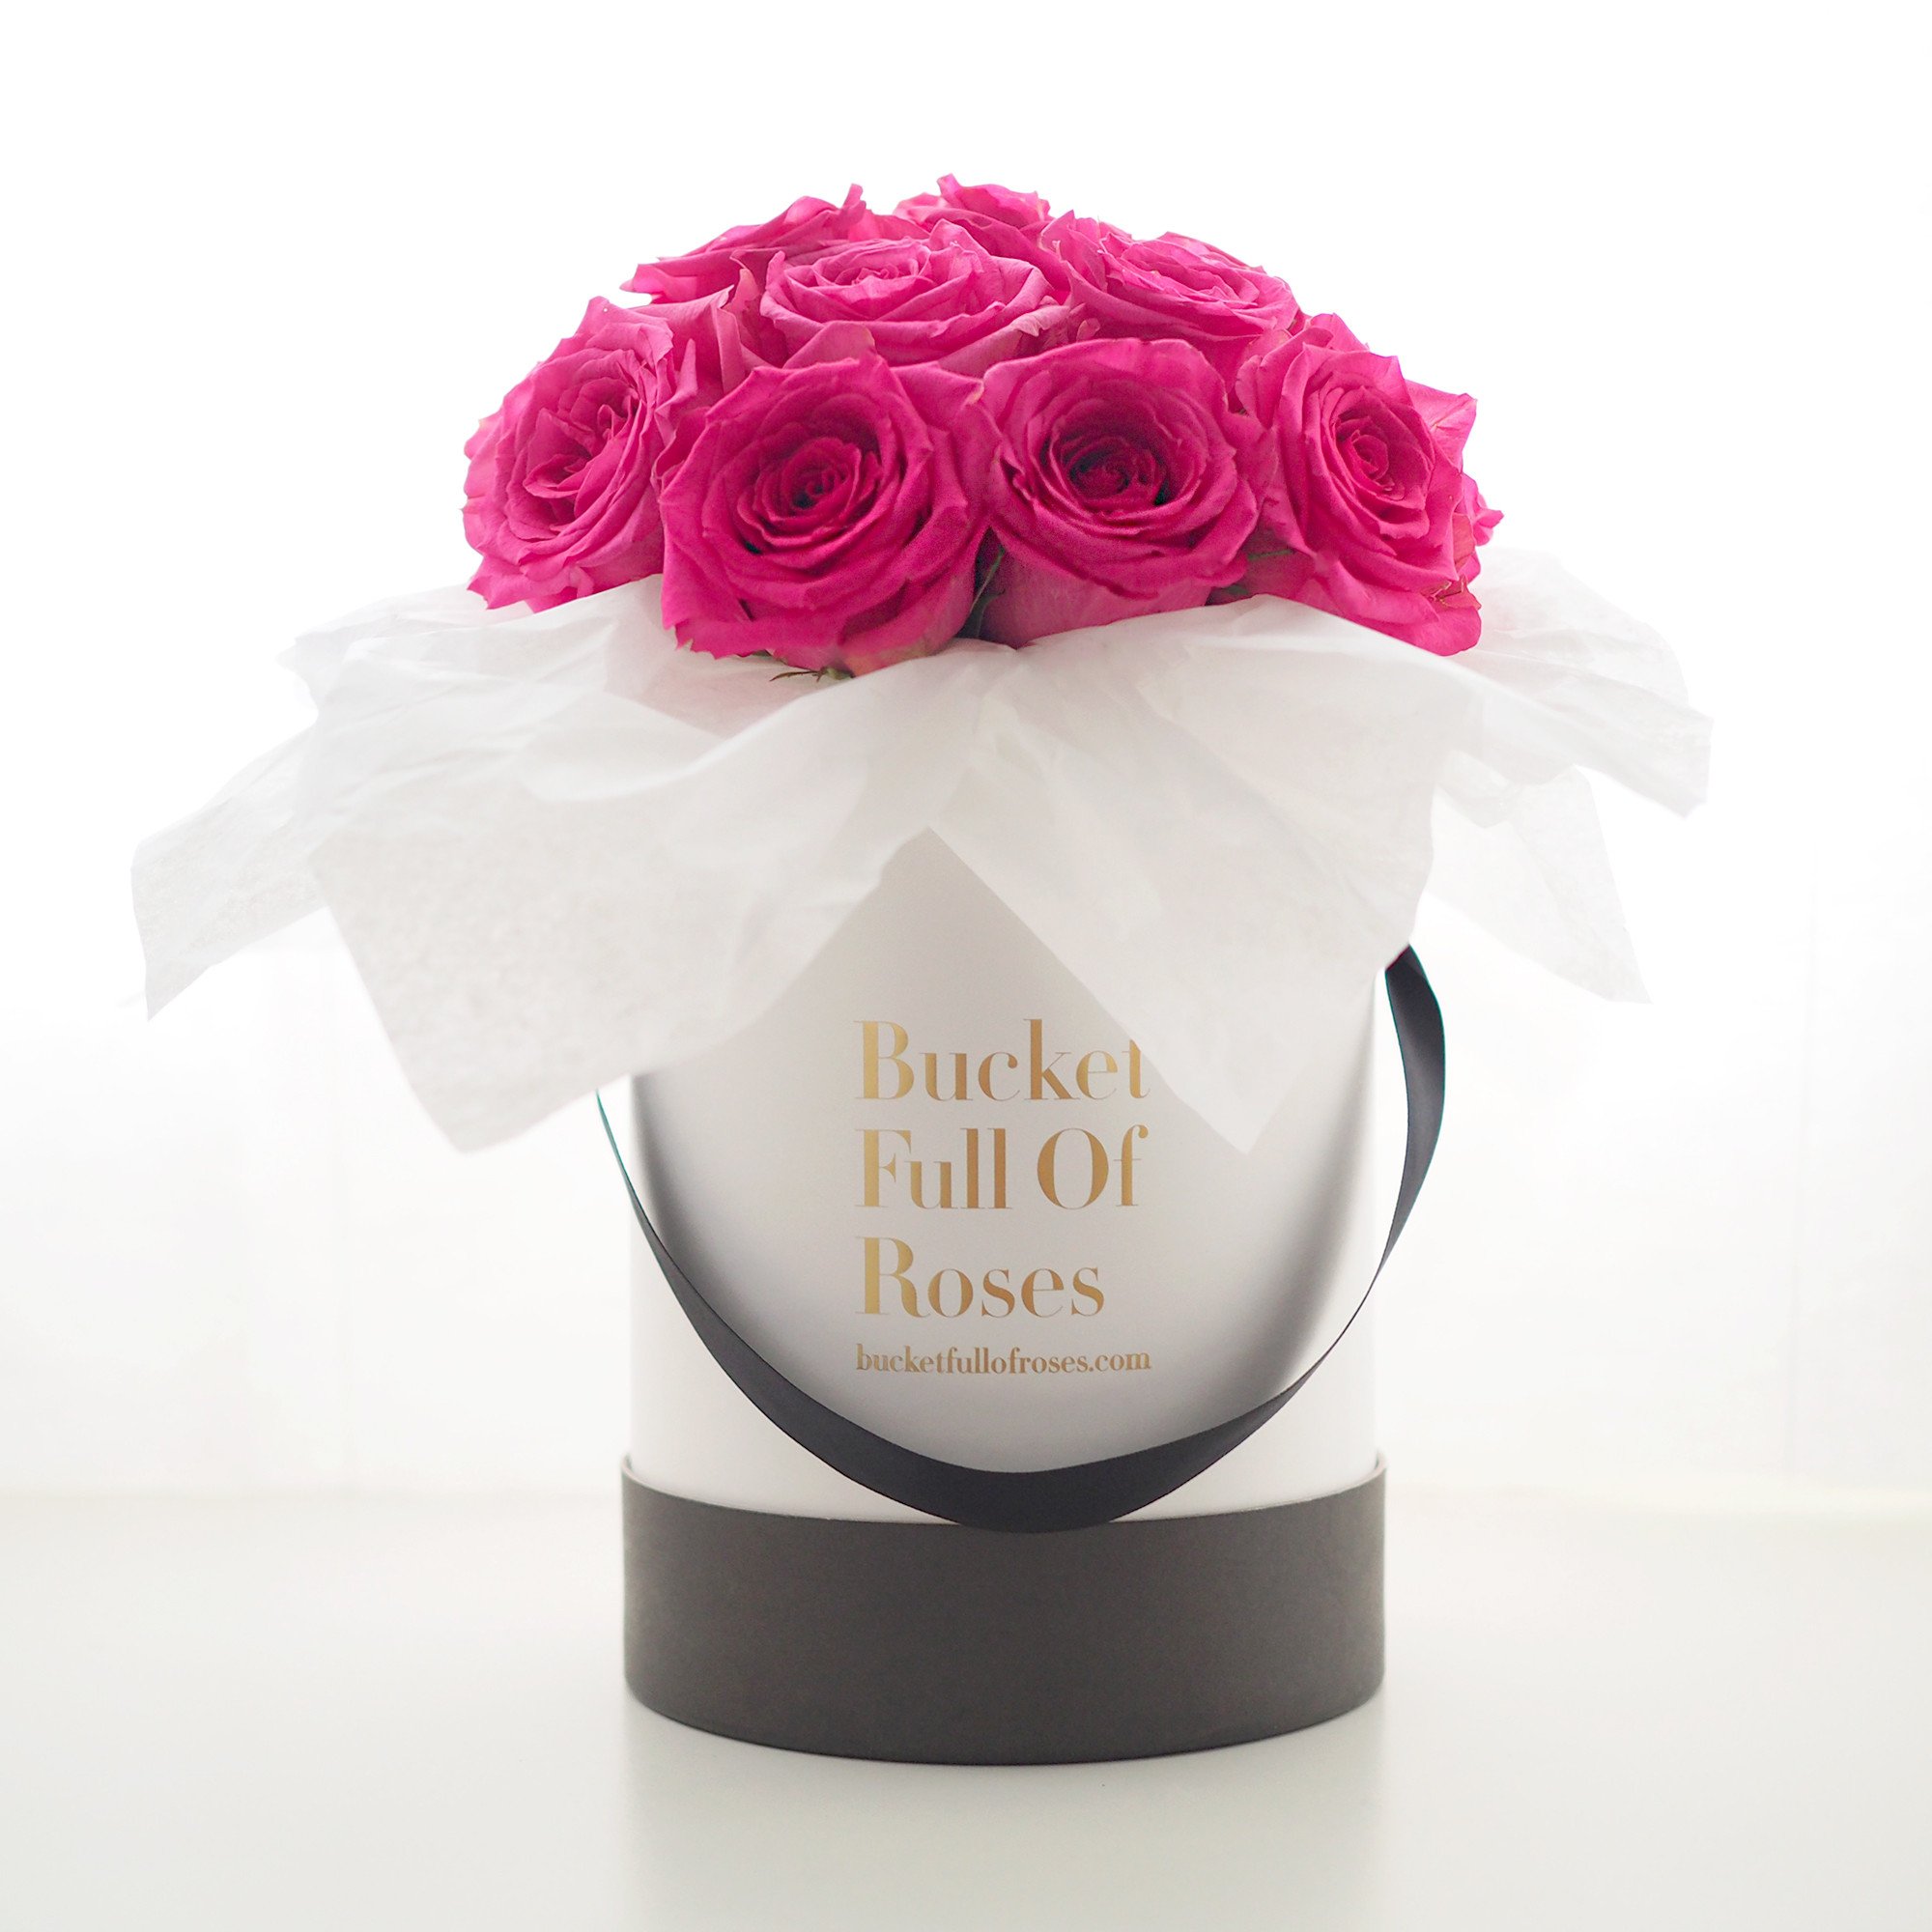 Roses Bucket - Light Pink - Bucket Full Of Roses